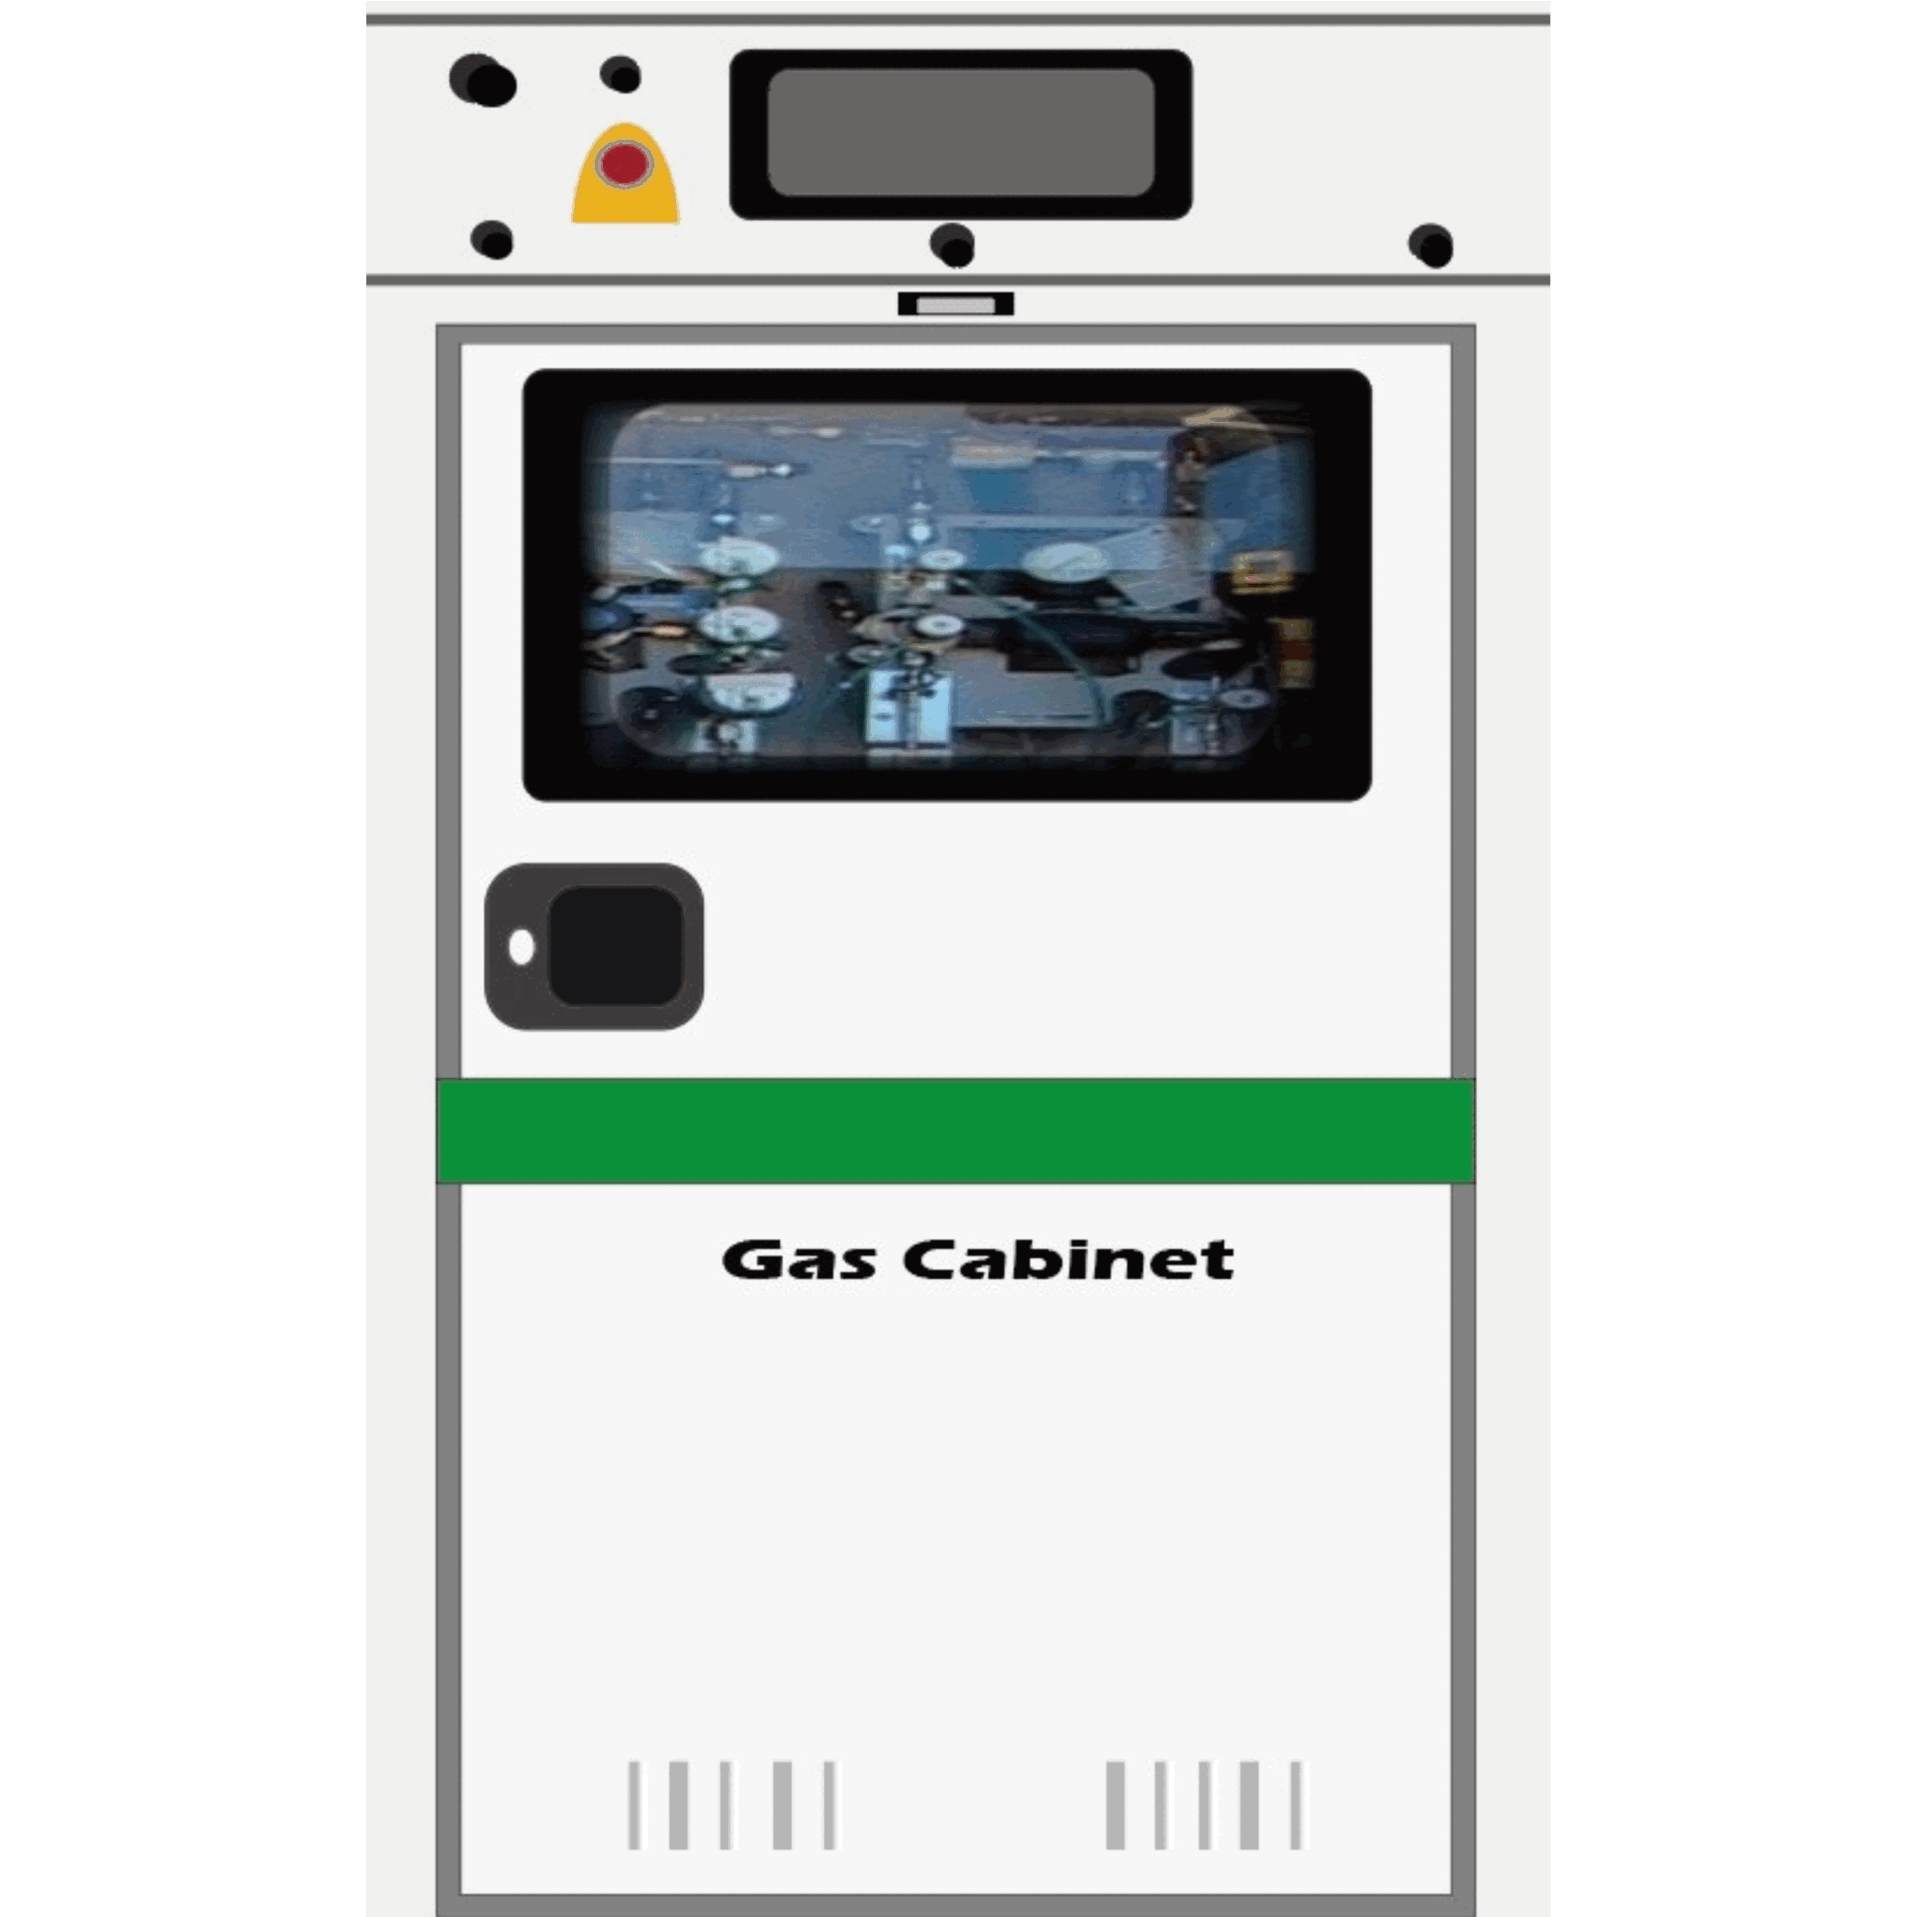 โซลูชันสำหรับตู้แก๊สของอุตสาหกรรมกึ่งตัวนำและตู้ของสถานีชาร์จ